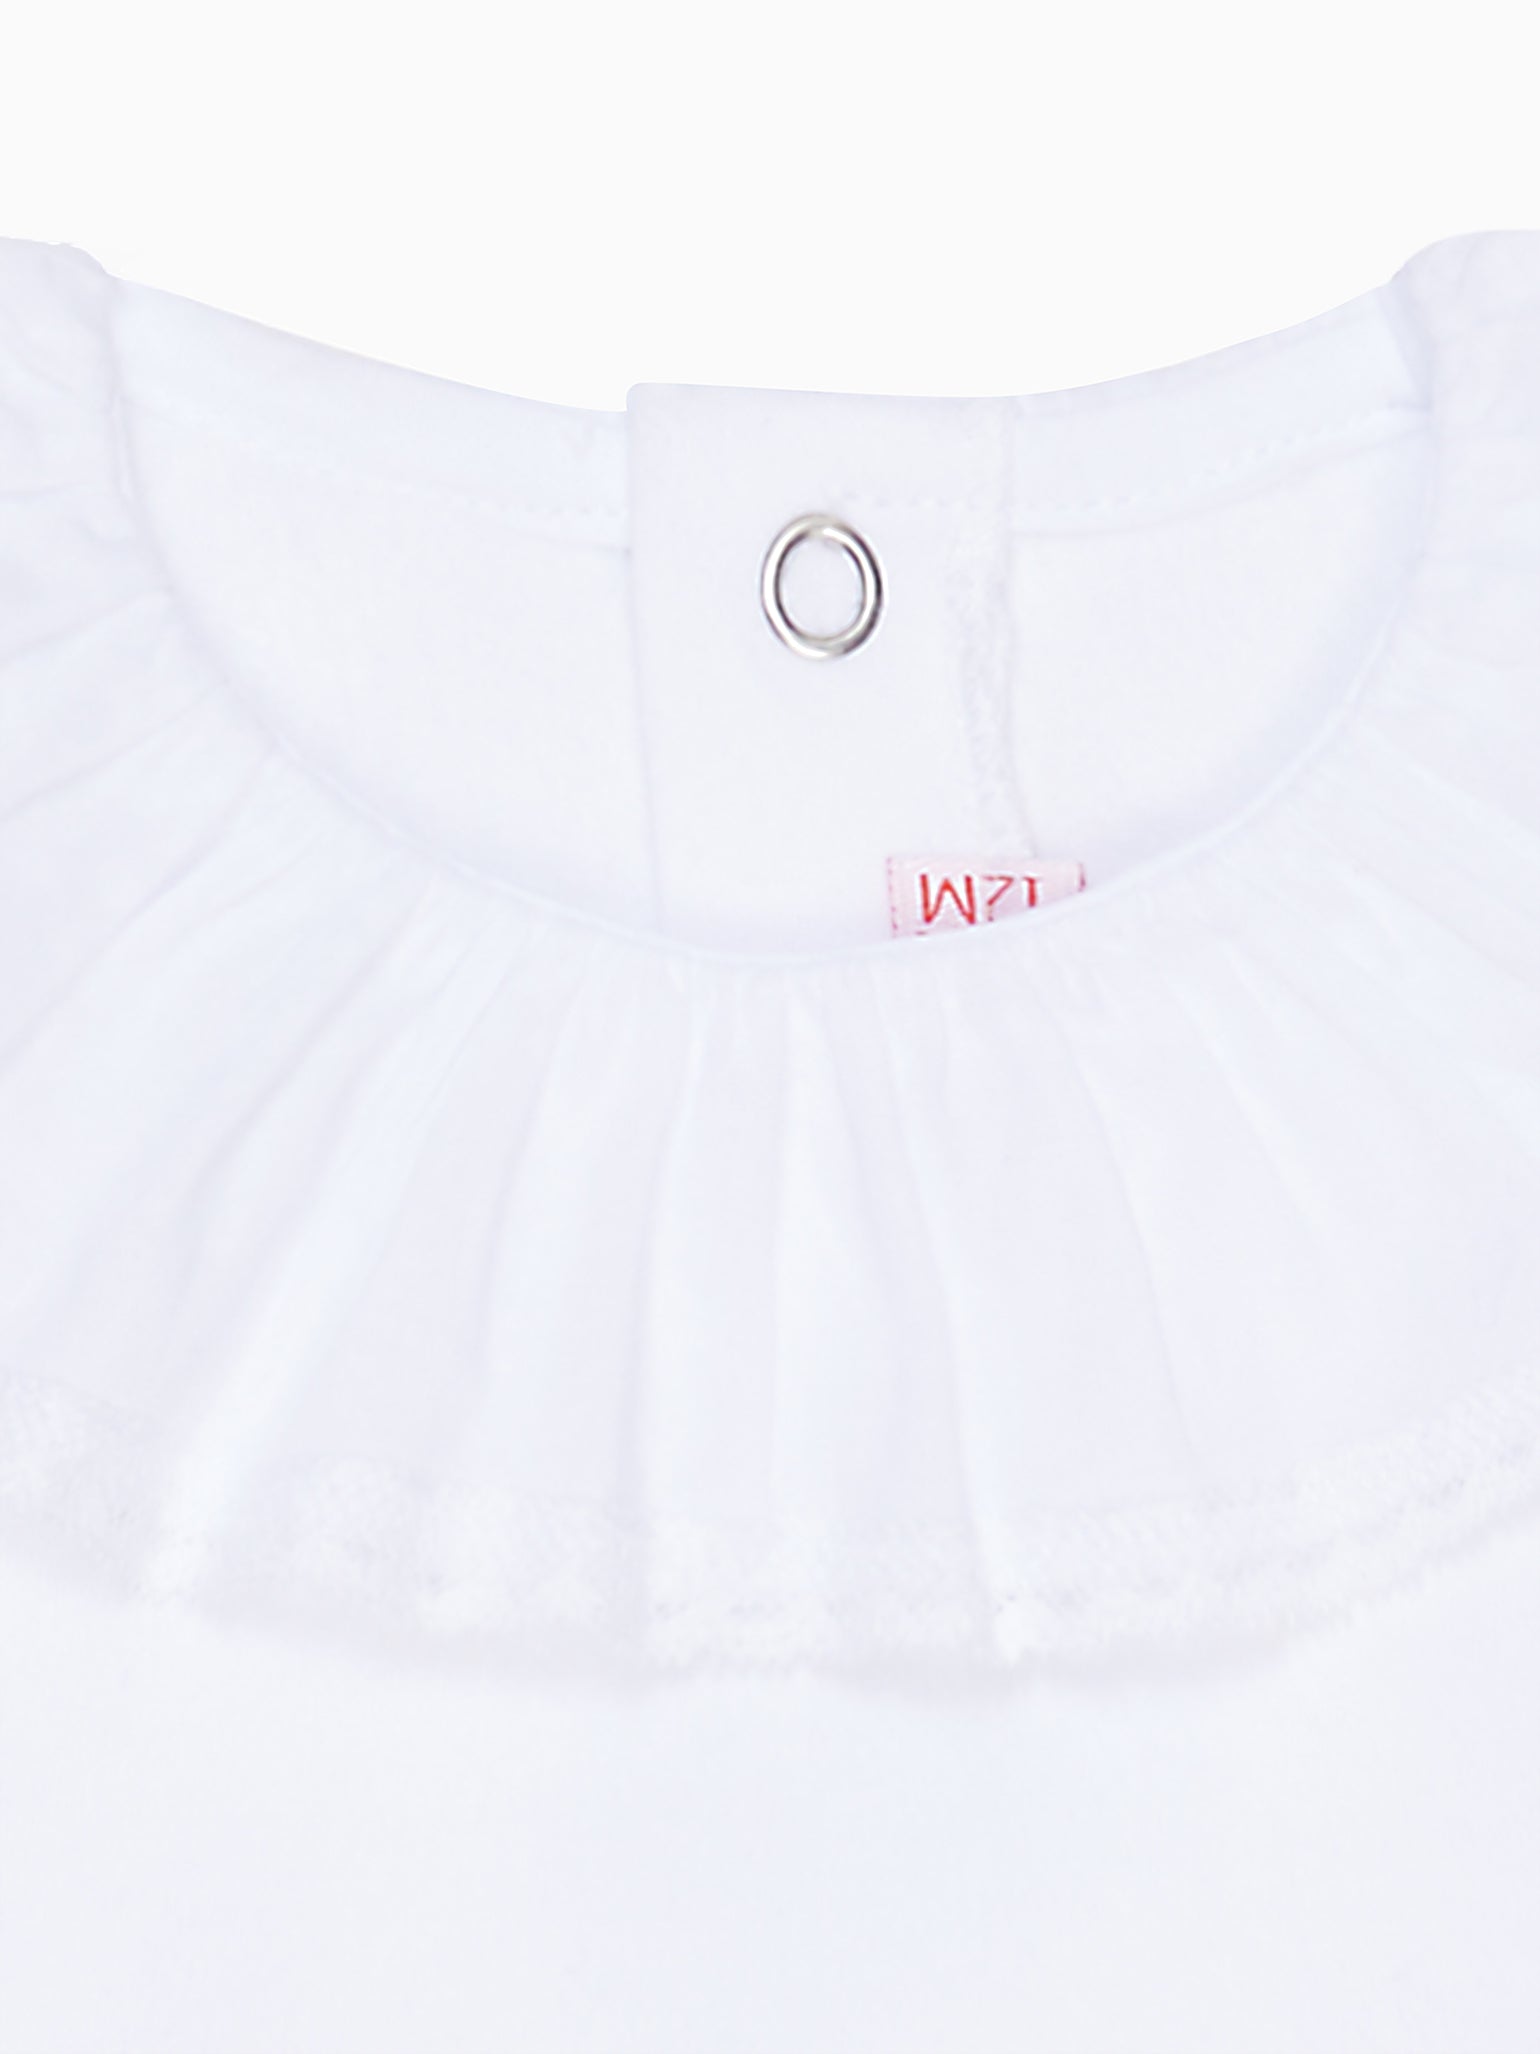 White Laya Long Sleeve Baby Body Vest